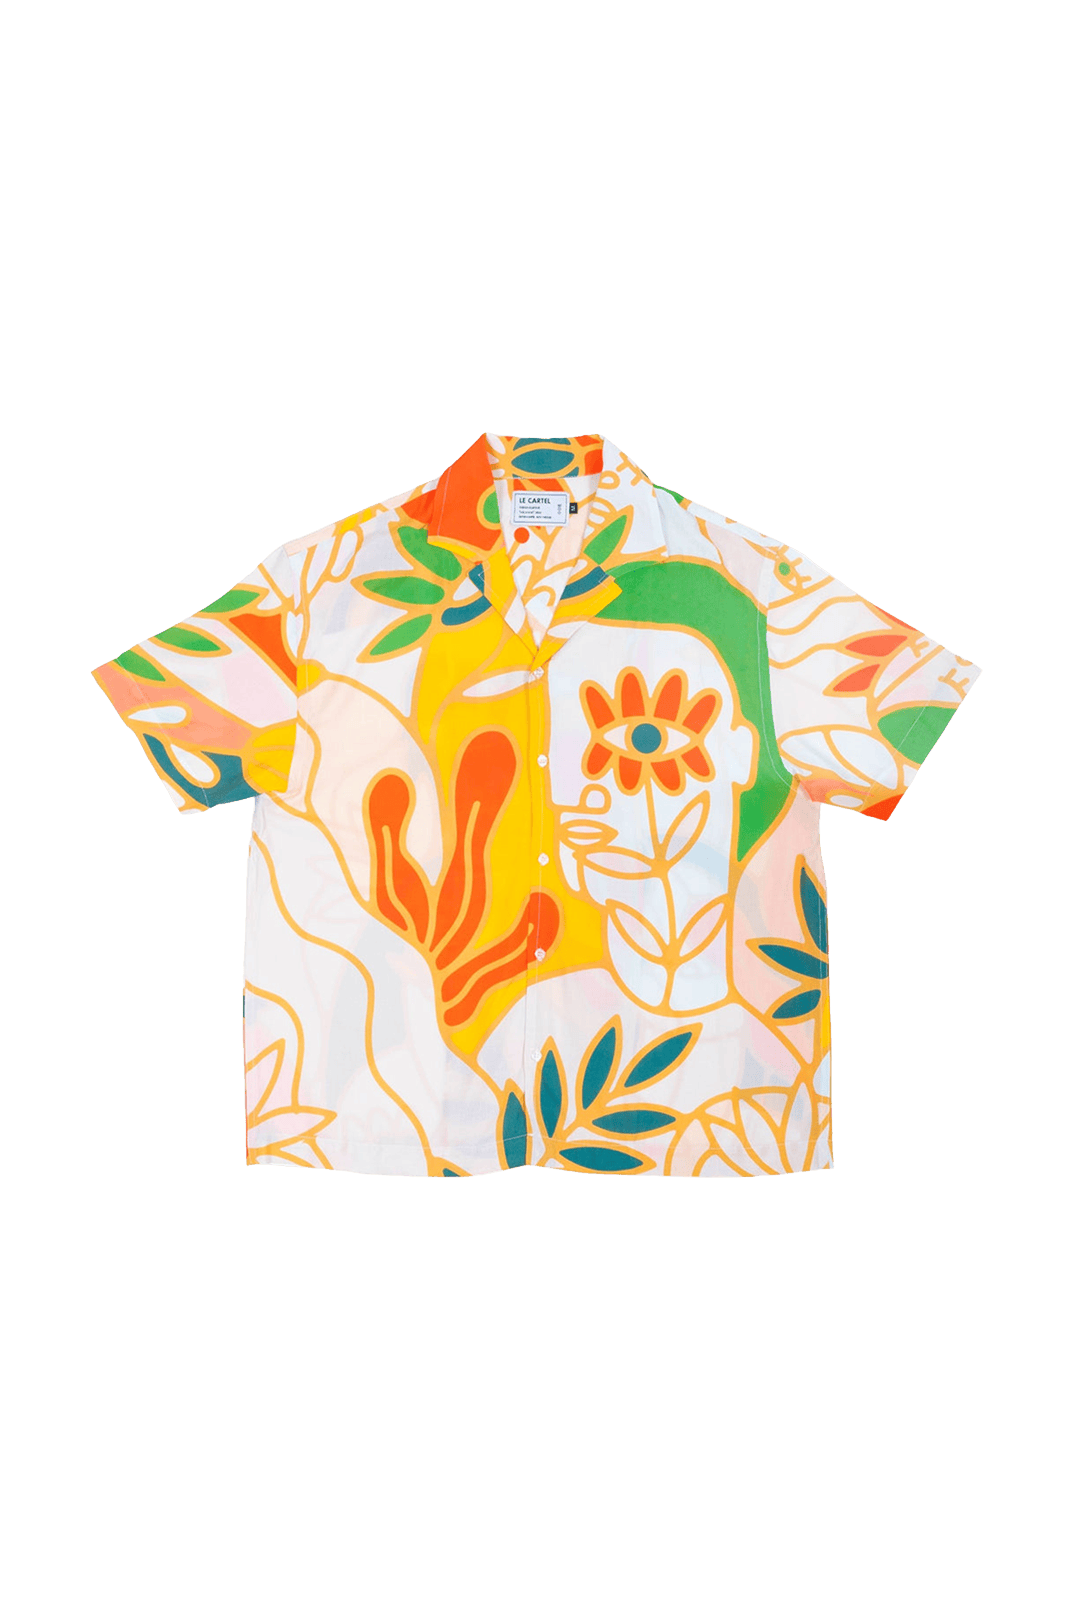 SOLSTICE・Printed shirt・Orange